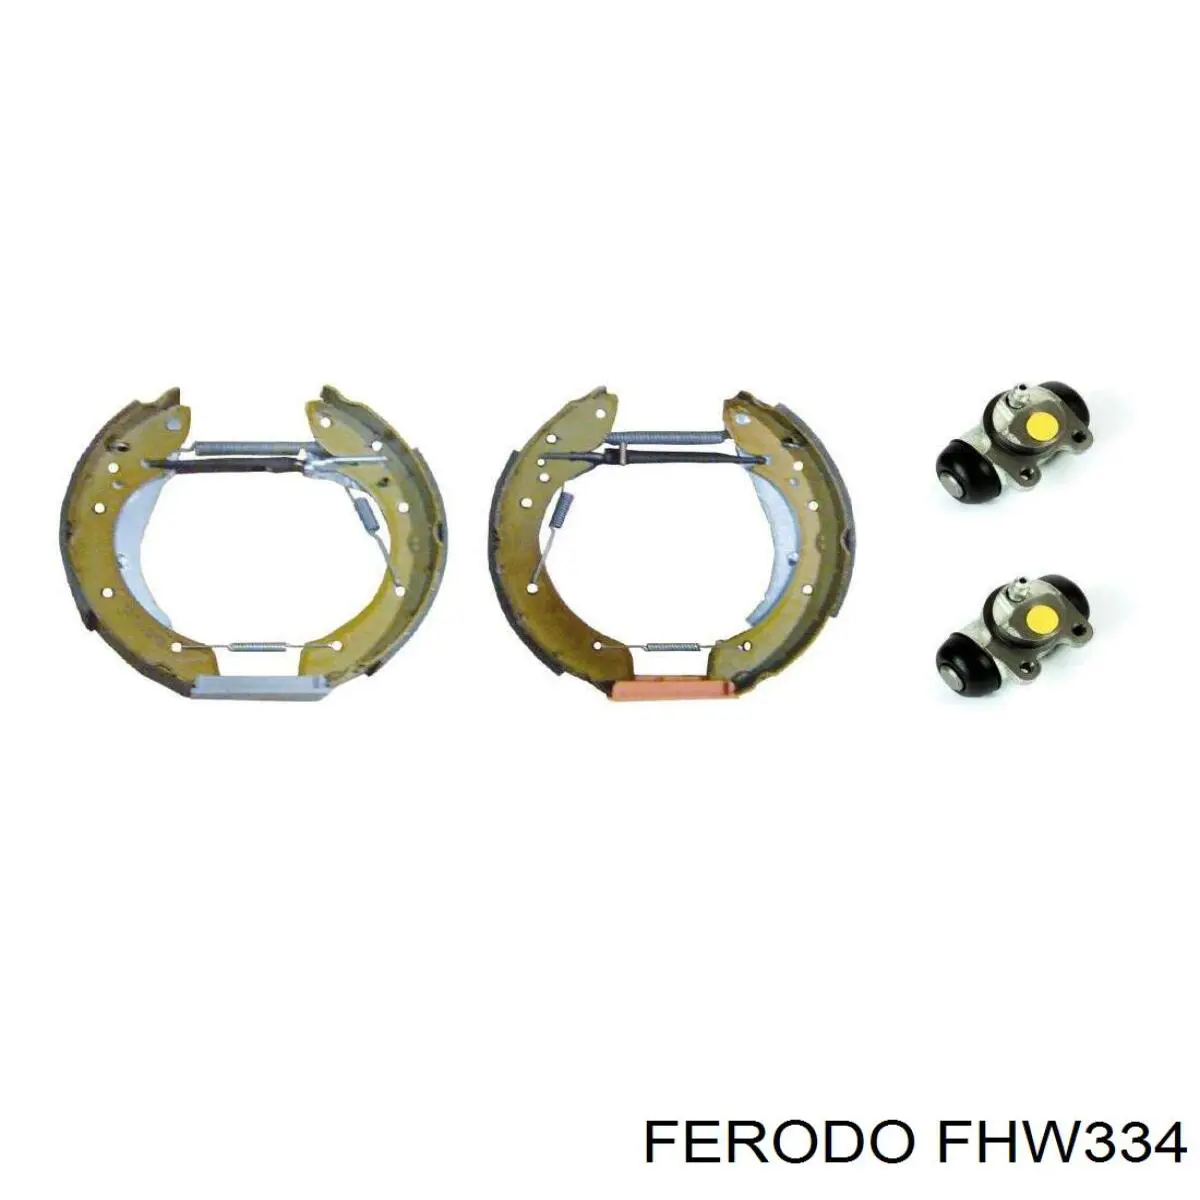 FHW334 Ferodo цилиндр тормозной колесный рабочий задний